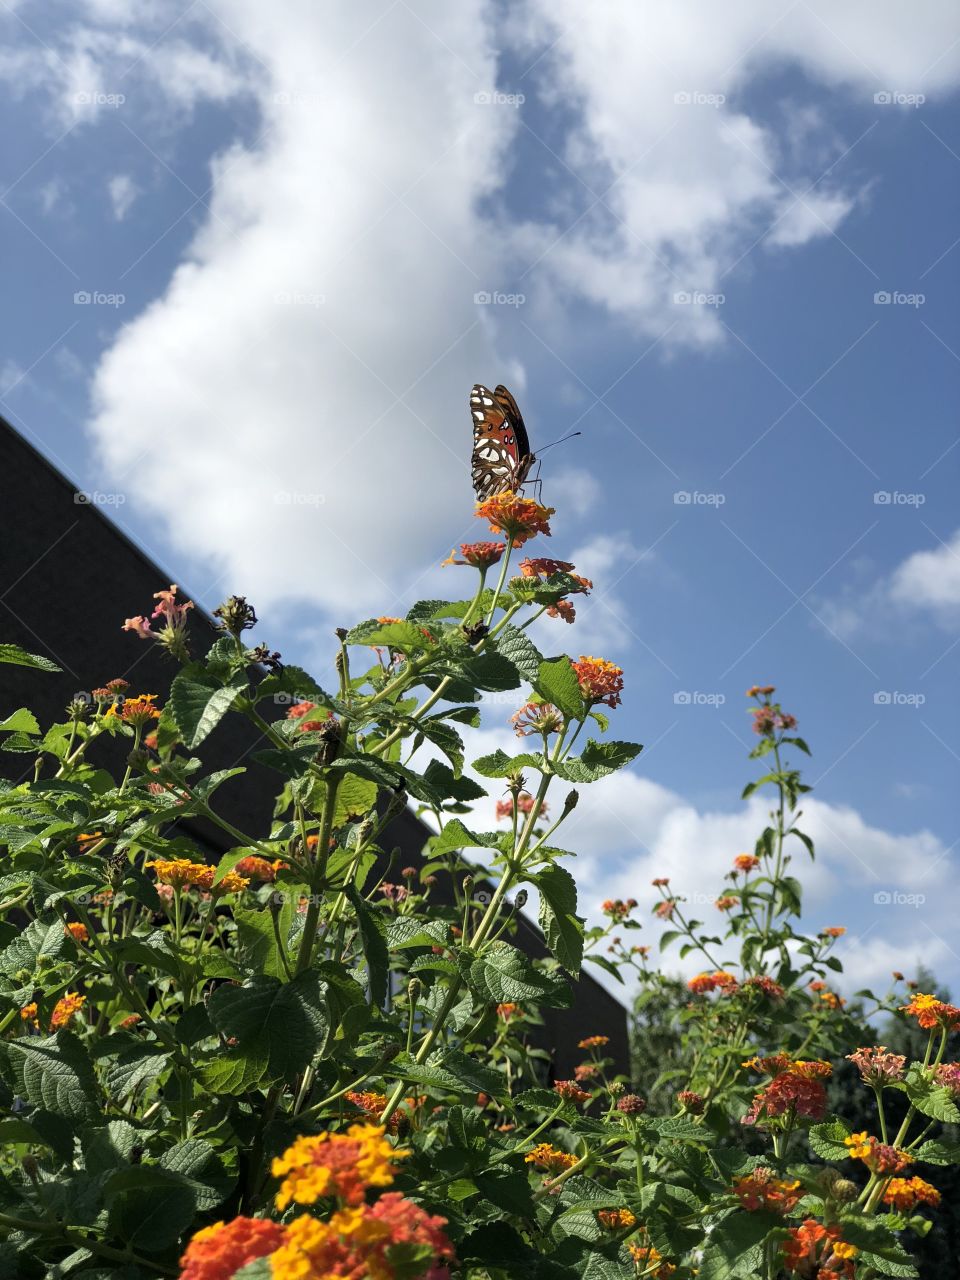 Butterfly on an orange flower 